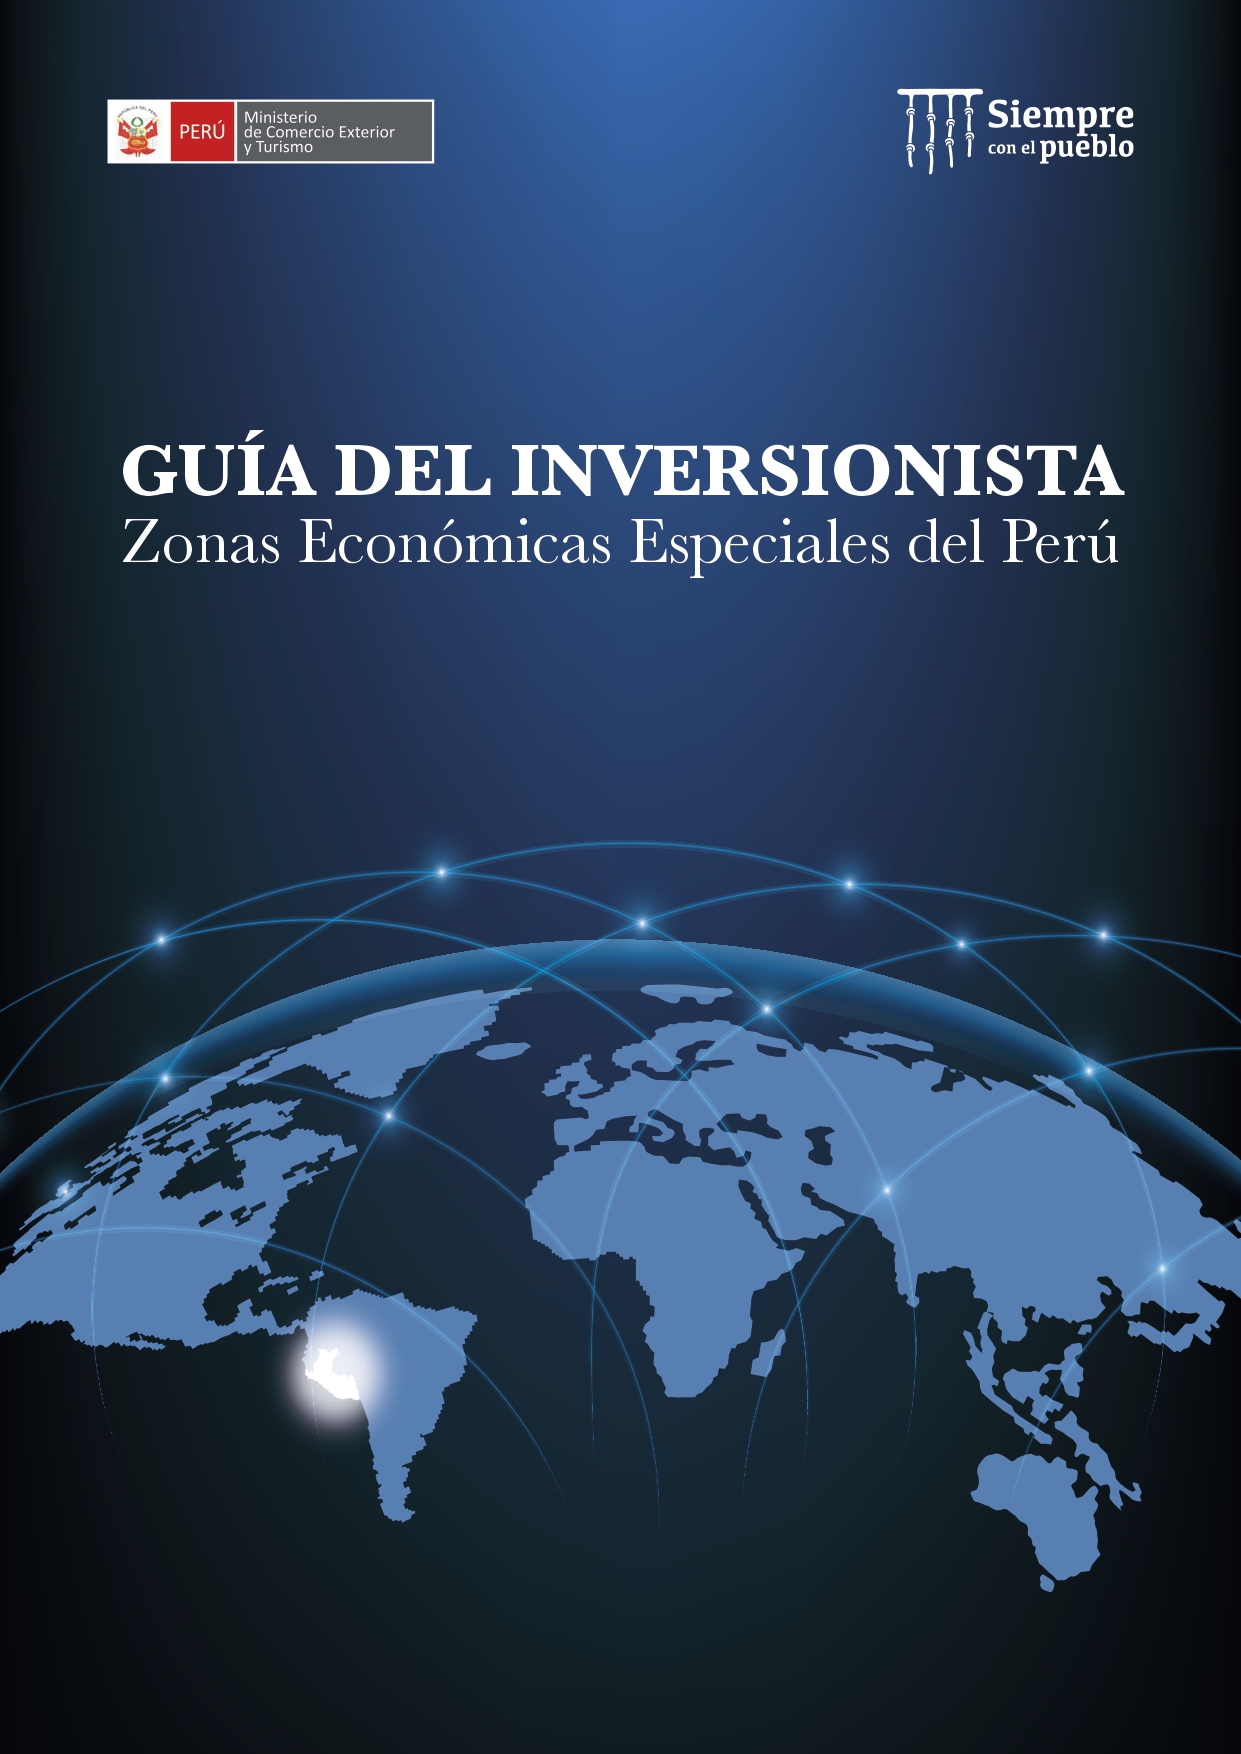 Guía del inversionista de las Zonas Económicas Especiales del Perú